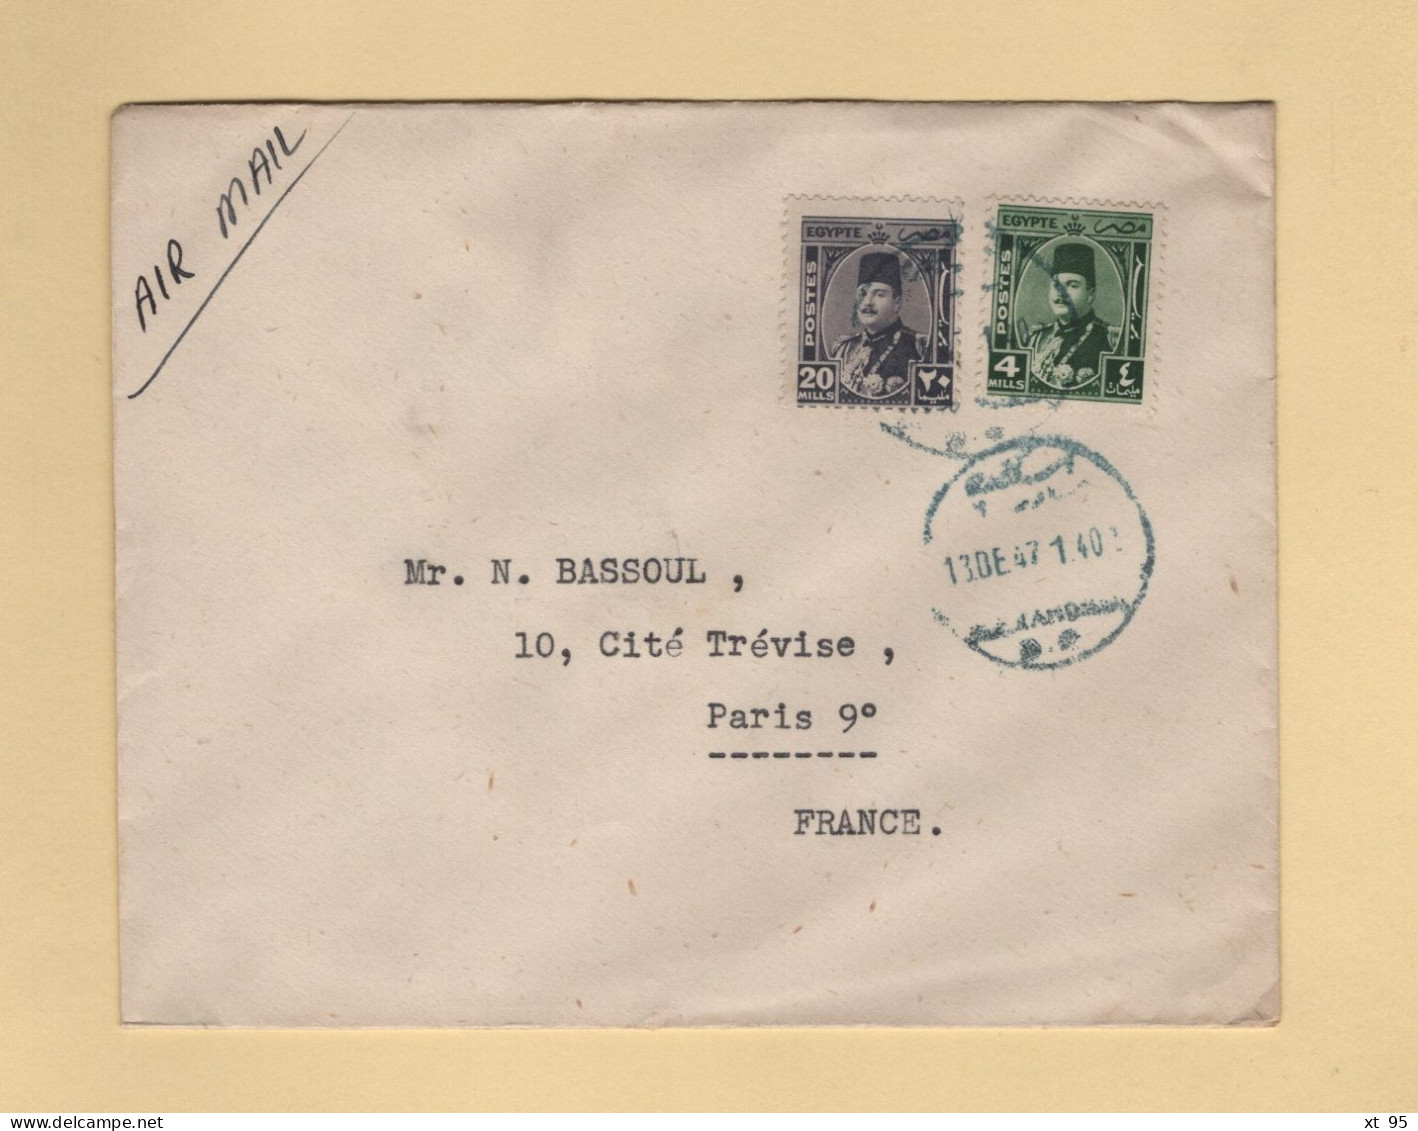 Egypte - Alexandrie Par Avion Destination France - 1947 - Briefe U. Dokumente